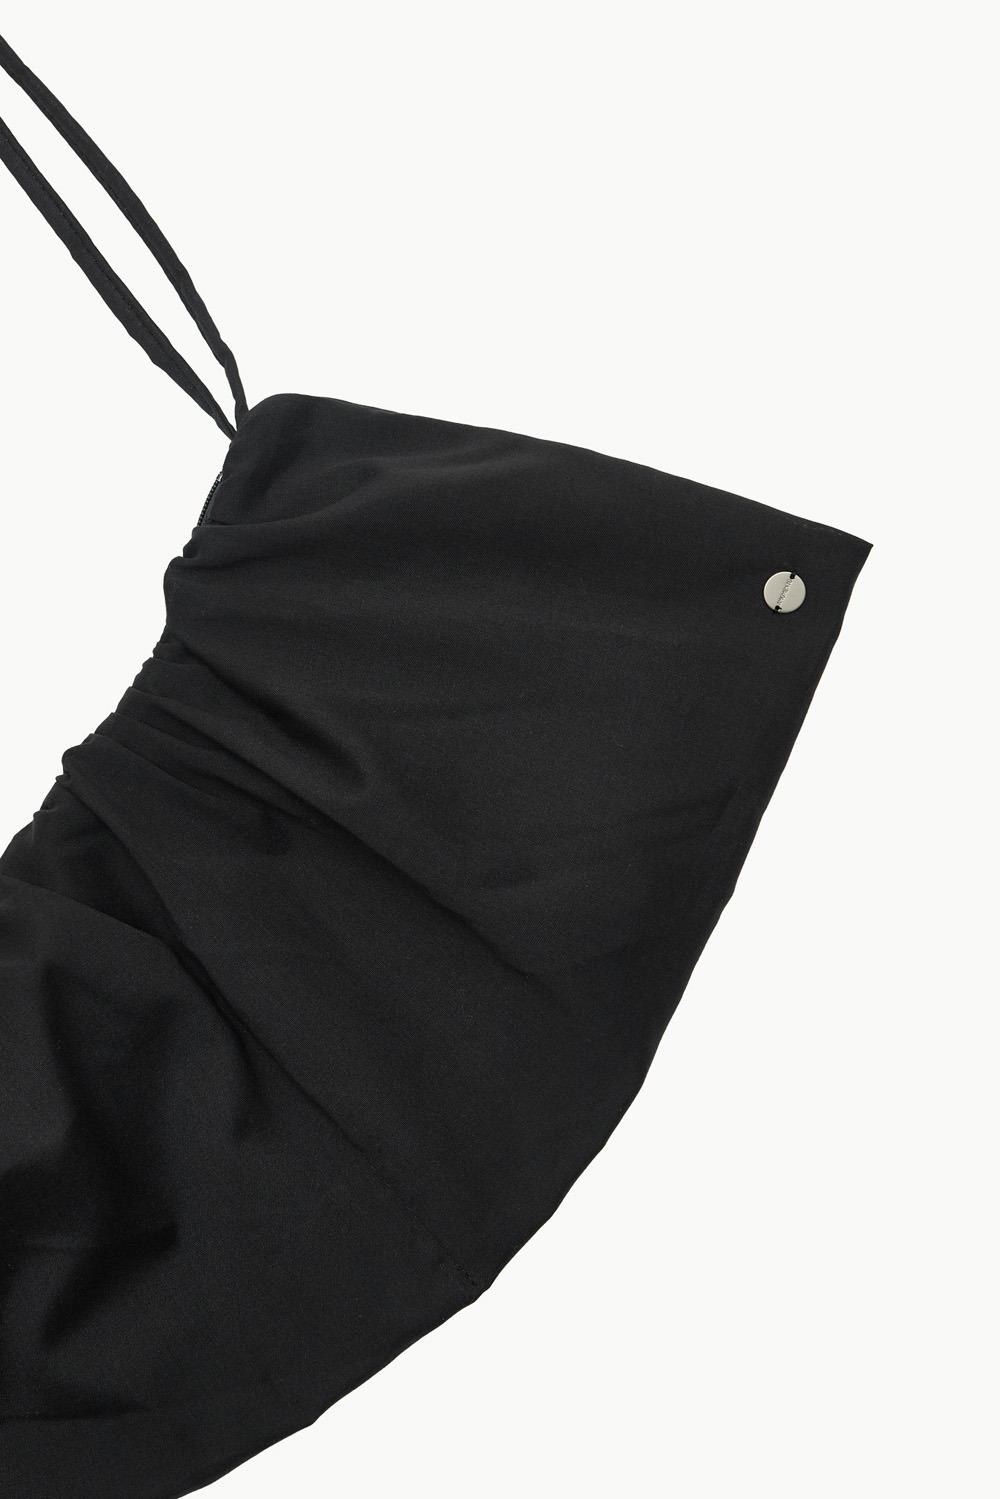 Shirring Bag-Black